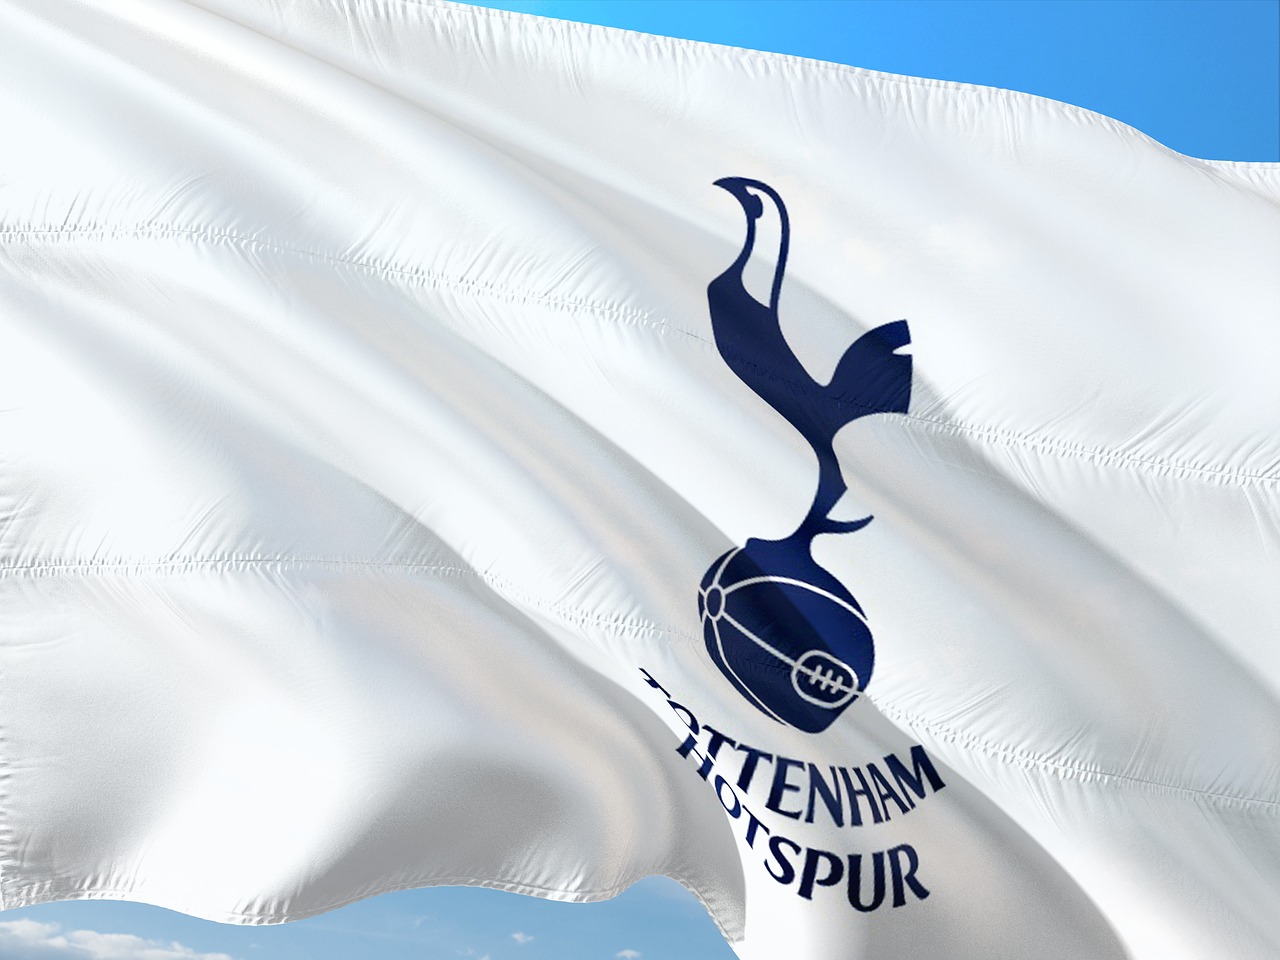 Murowanie – czyli dlaczego Tottenham nie zdobędzie tytułu?